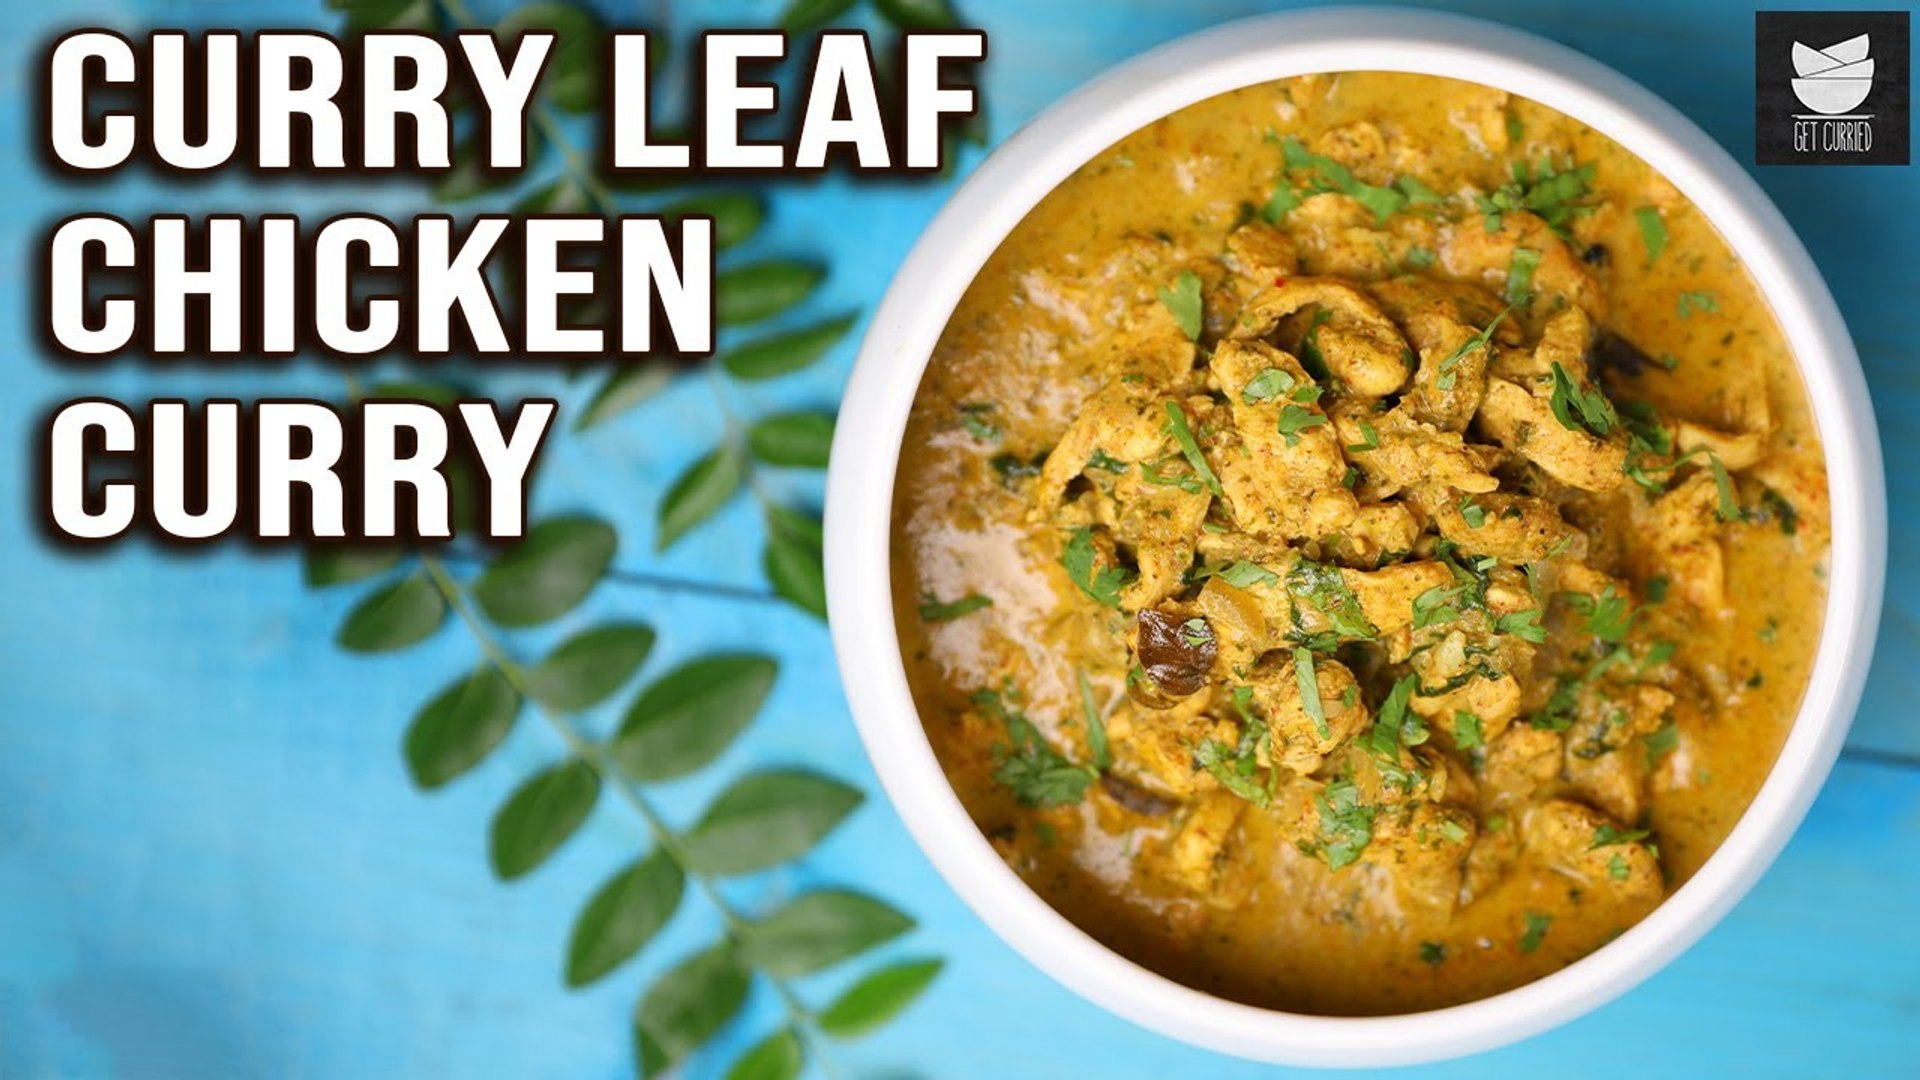 Curry Leaf Chicken Curry | Homemade Chicken Julienne Recipe | Pepper Chicken | Get Curried